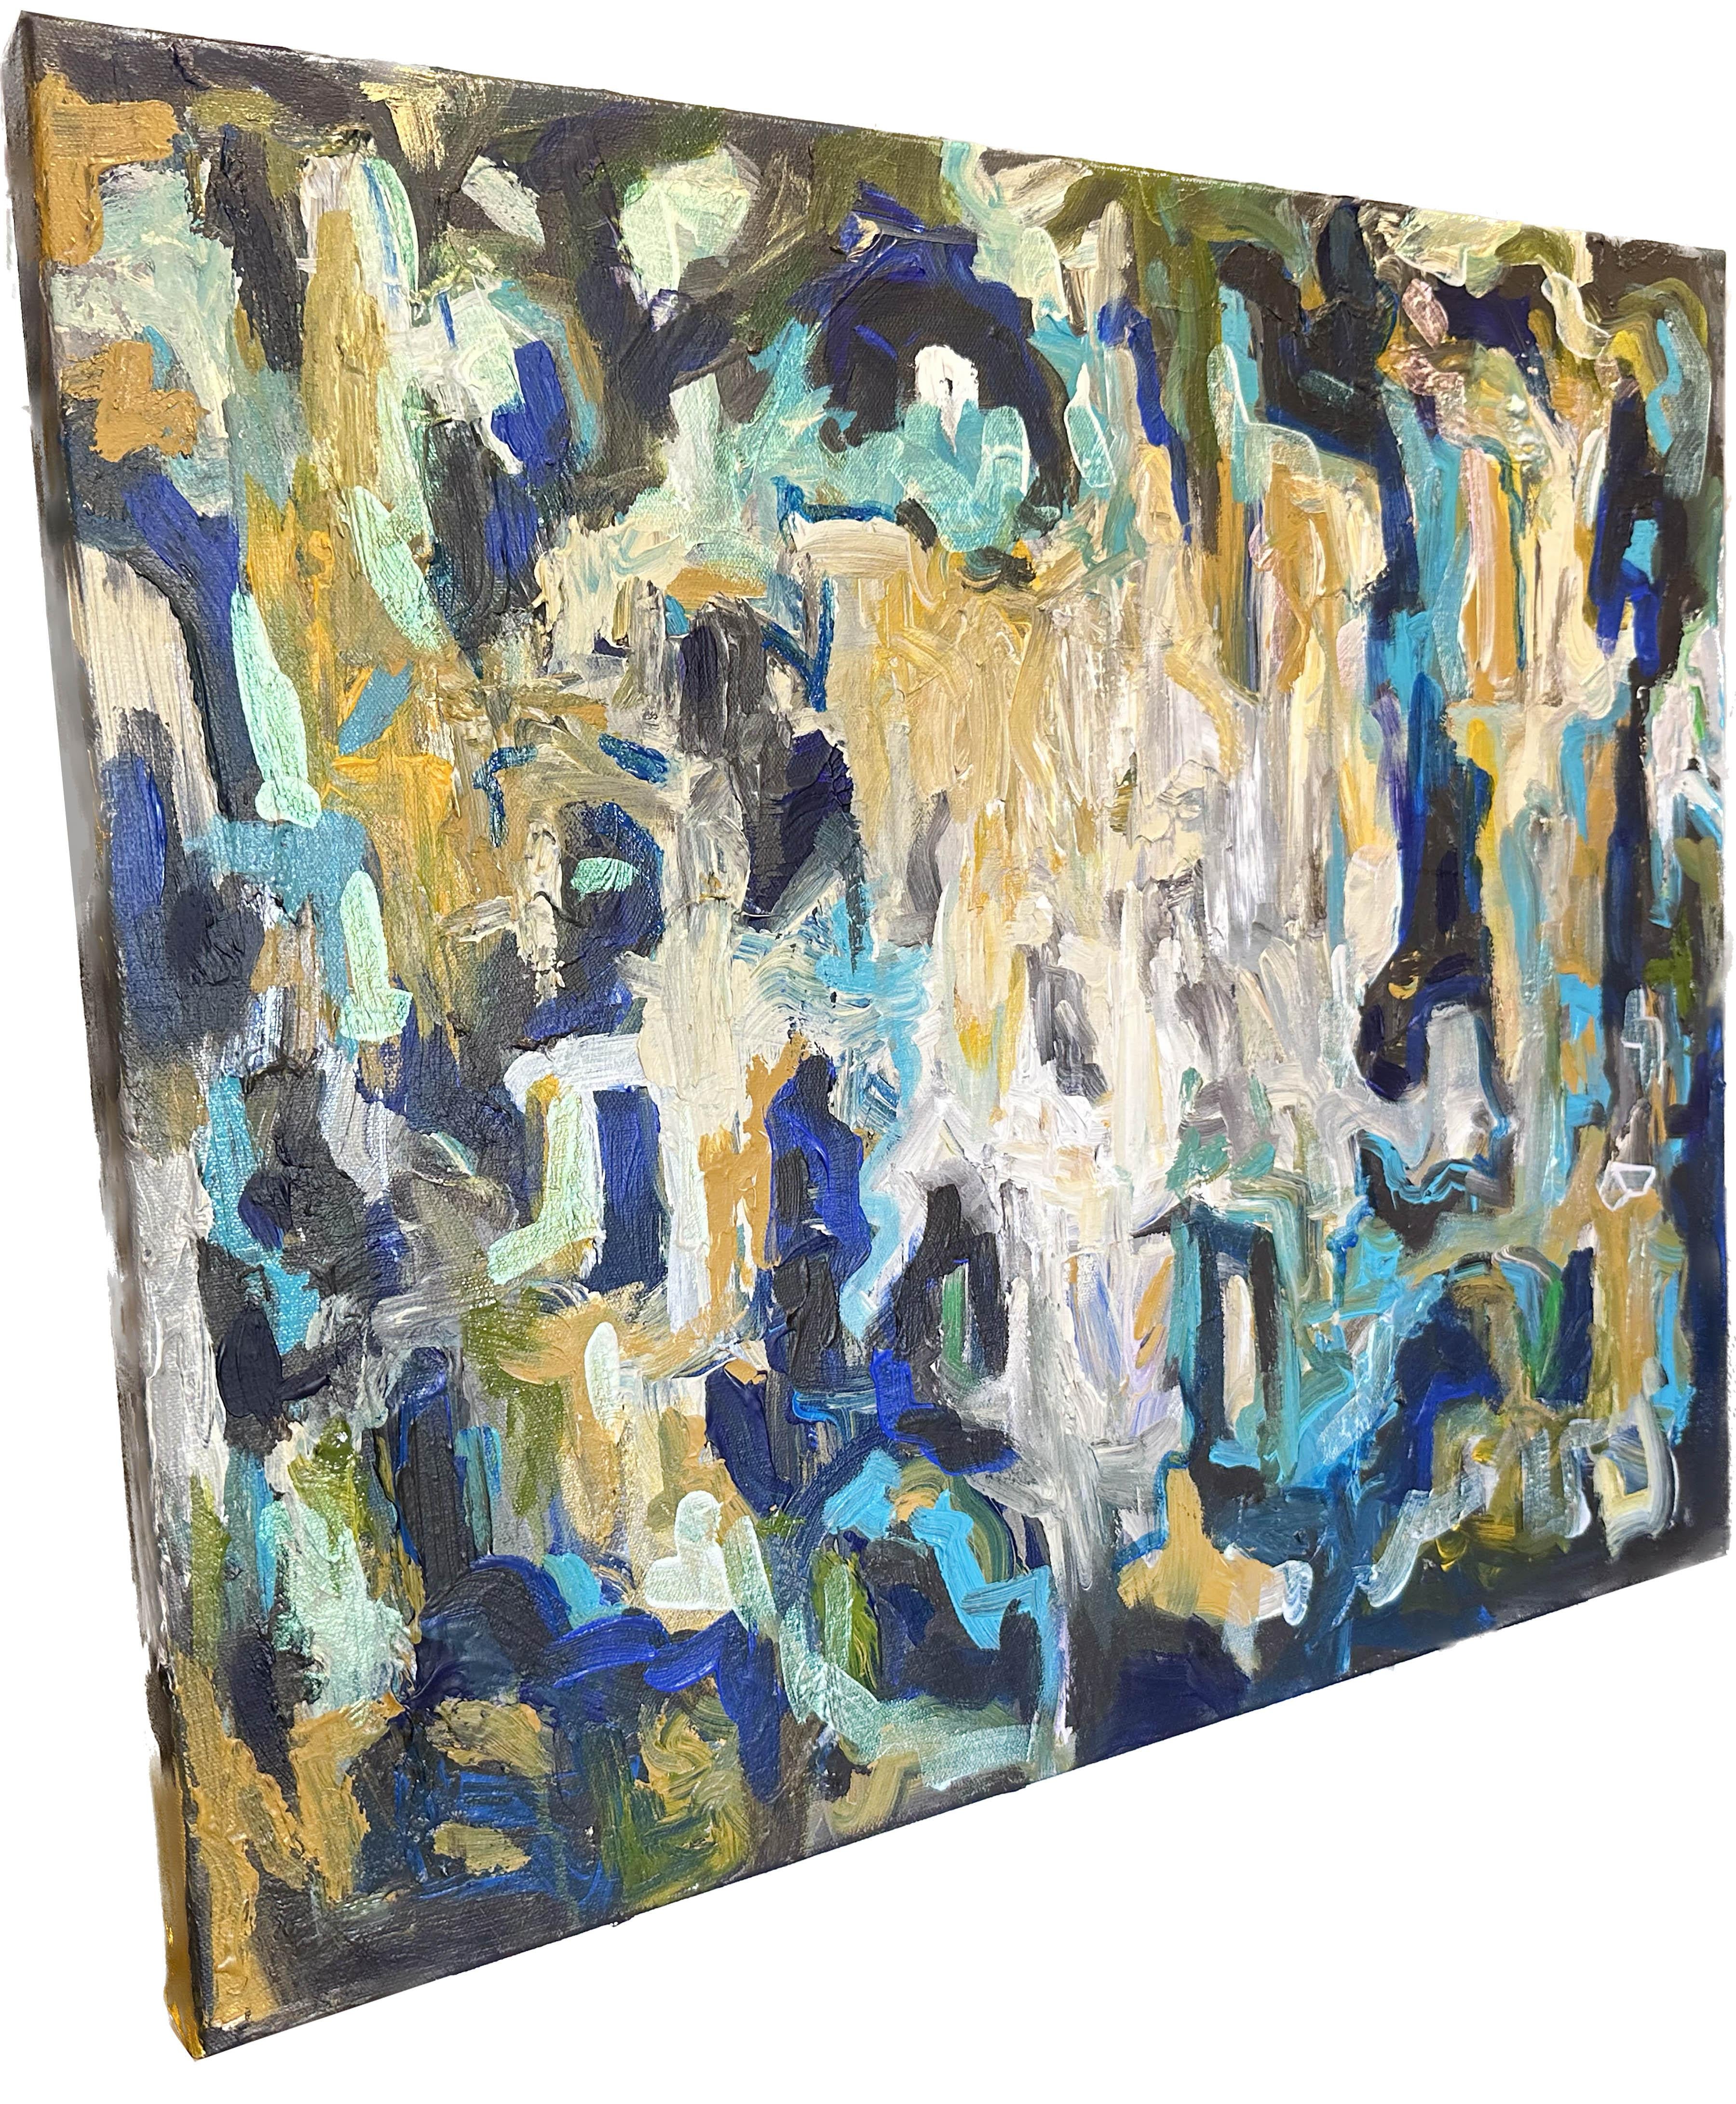 Ein hübsches, abstraktes Gemälde des amerikanischen Künstlers Jason Stallings. Acryl auf Leinwand. Interferenzfarben in Kombination mit einer Mischung aus normalen Acryltönen, einschließlich Grün-, Violett-, Braun- und Blautönen. Interferenzfarben